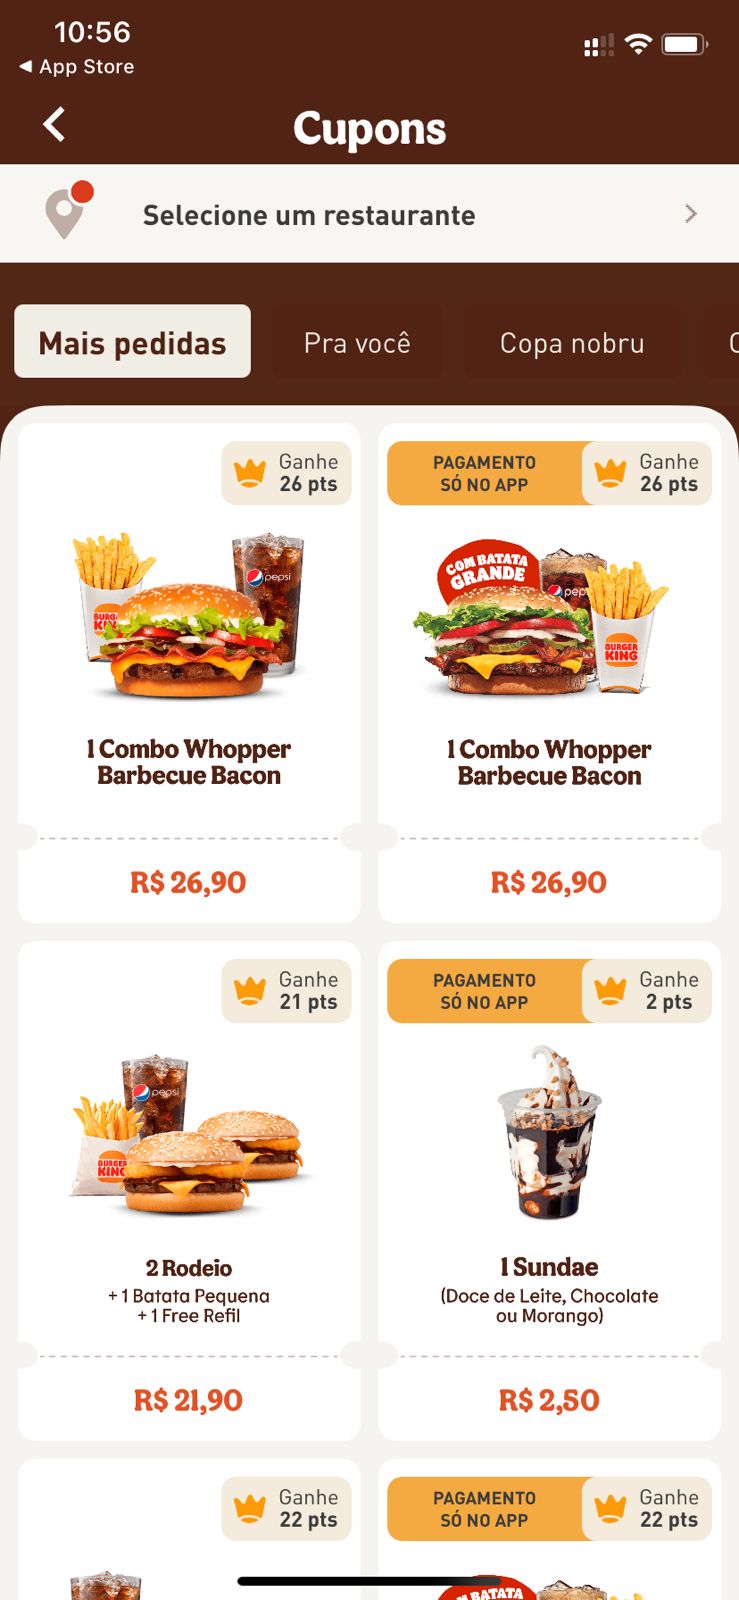 Burger King no Brasil inclui cachorro-quente em seu cardápio